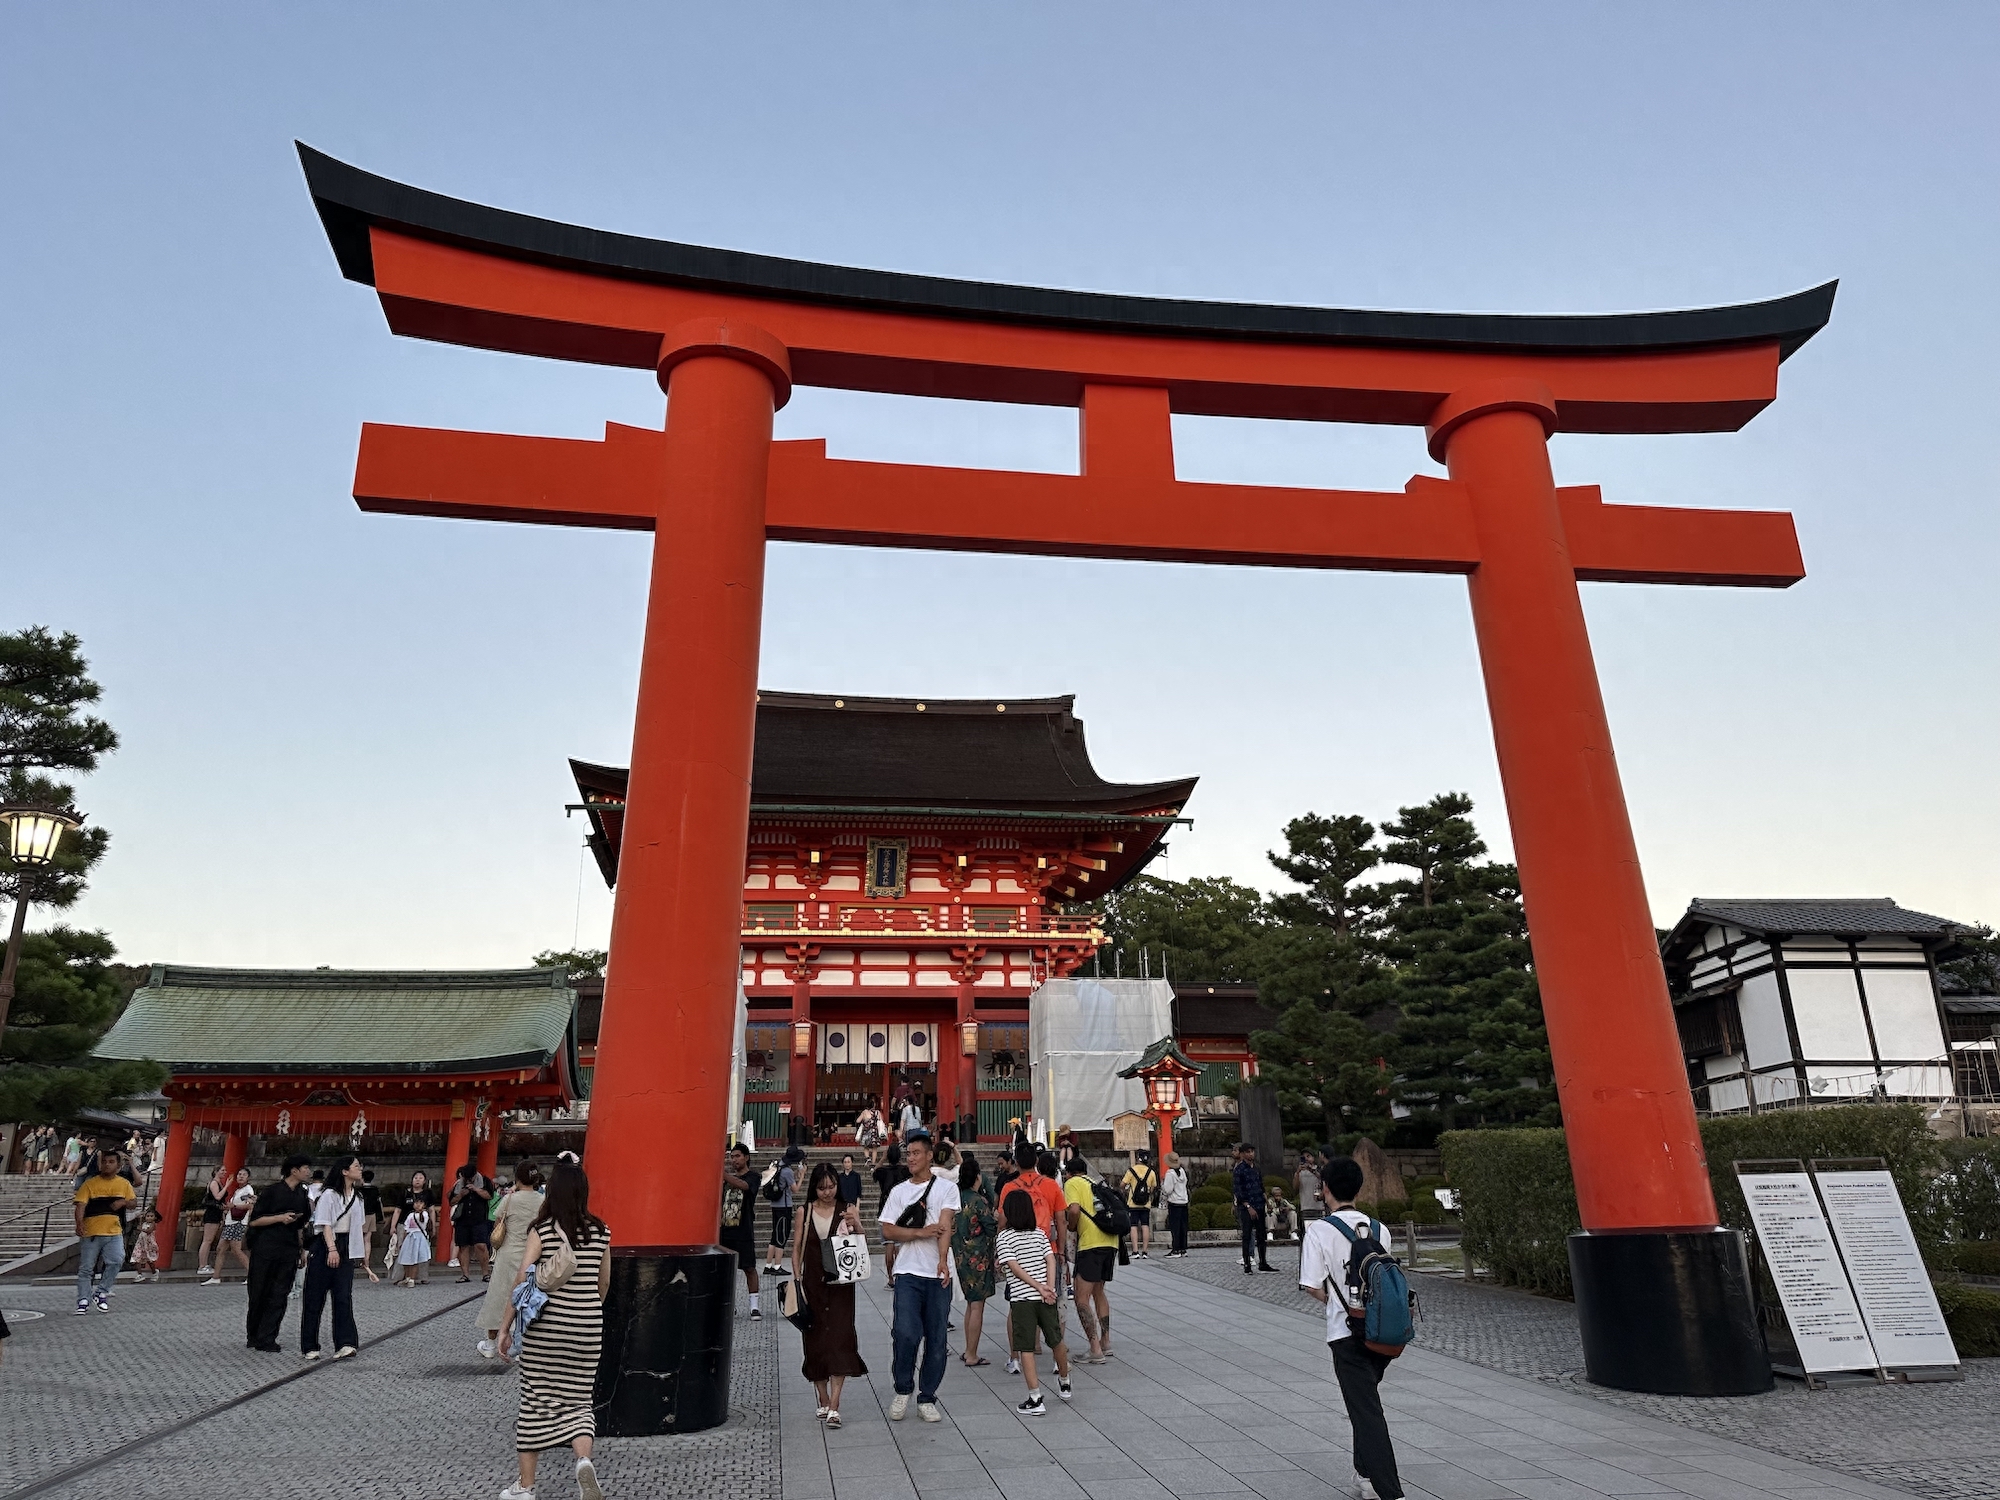 日本旅游有望成为黄金周爆款亚太目的地势头不减